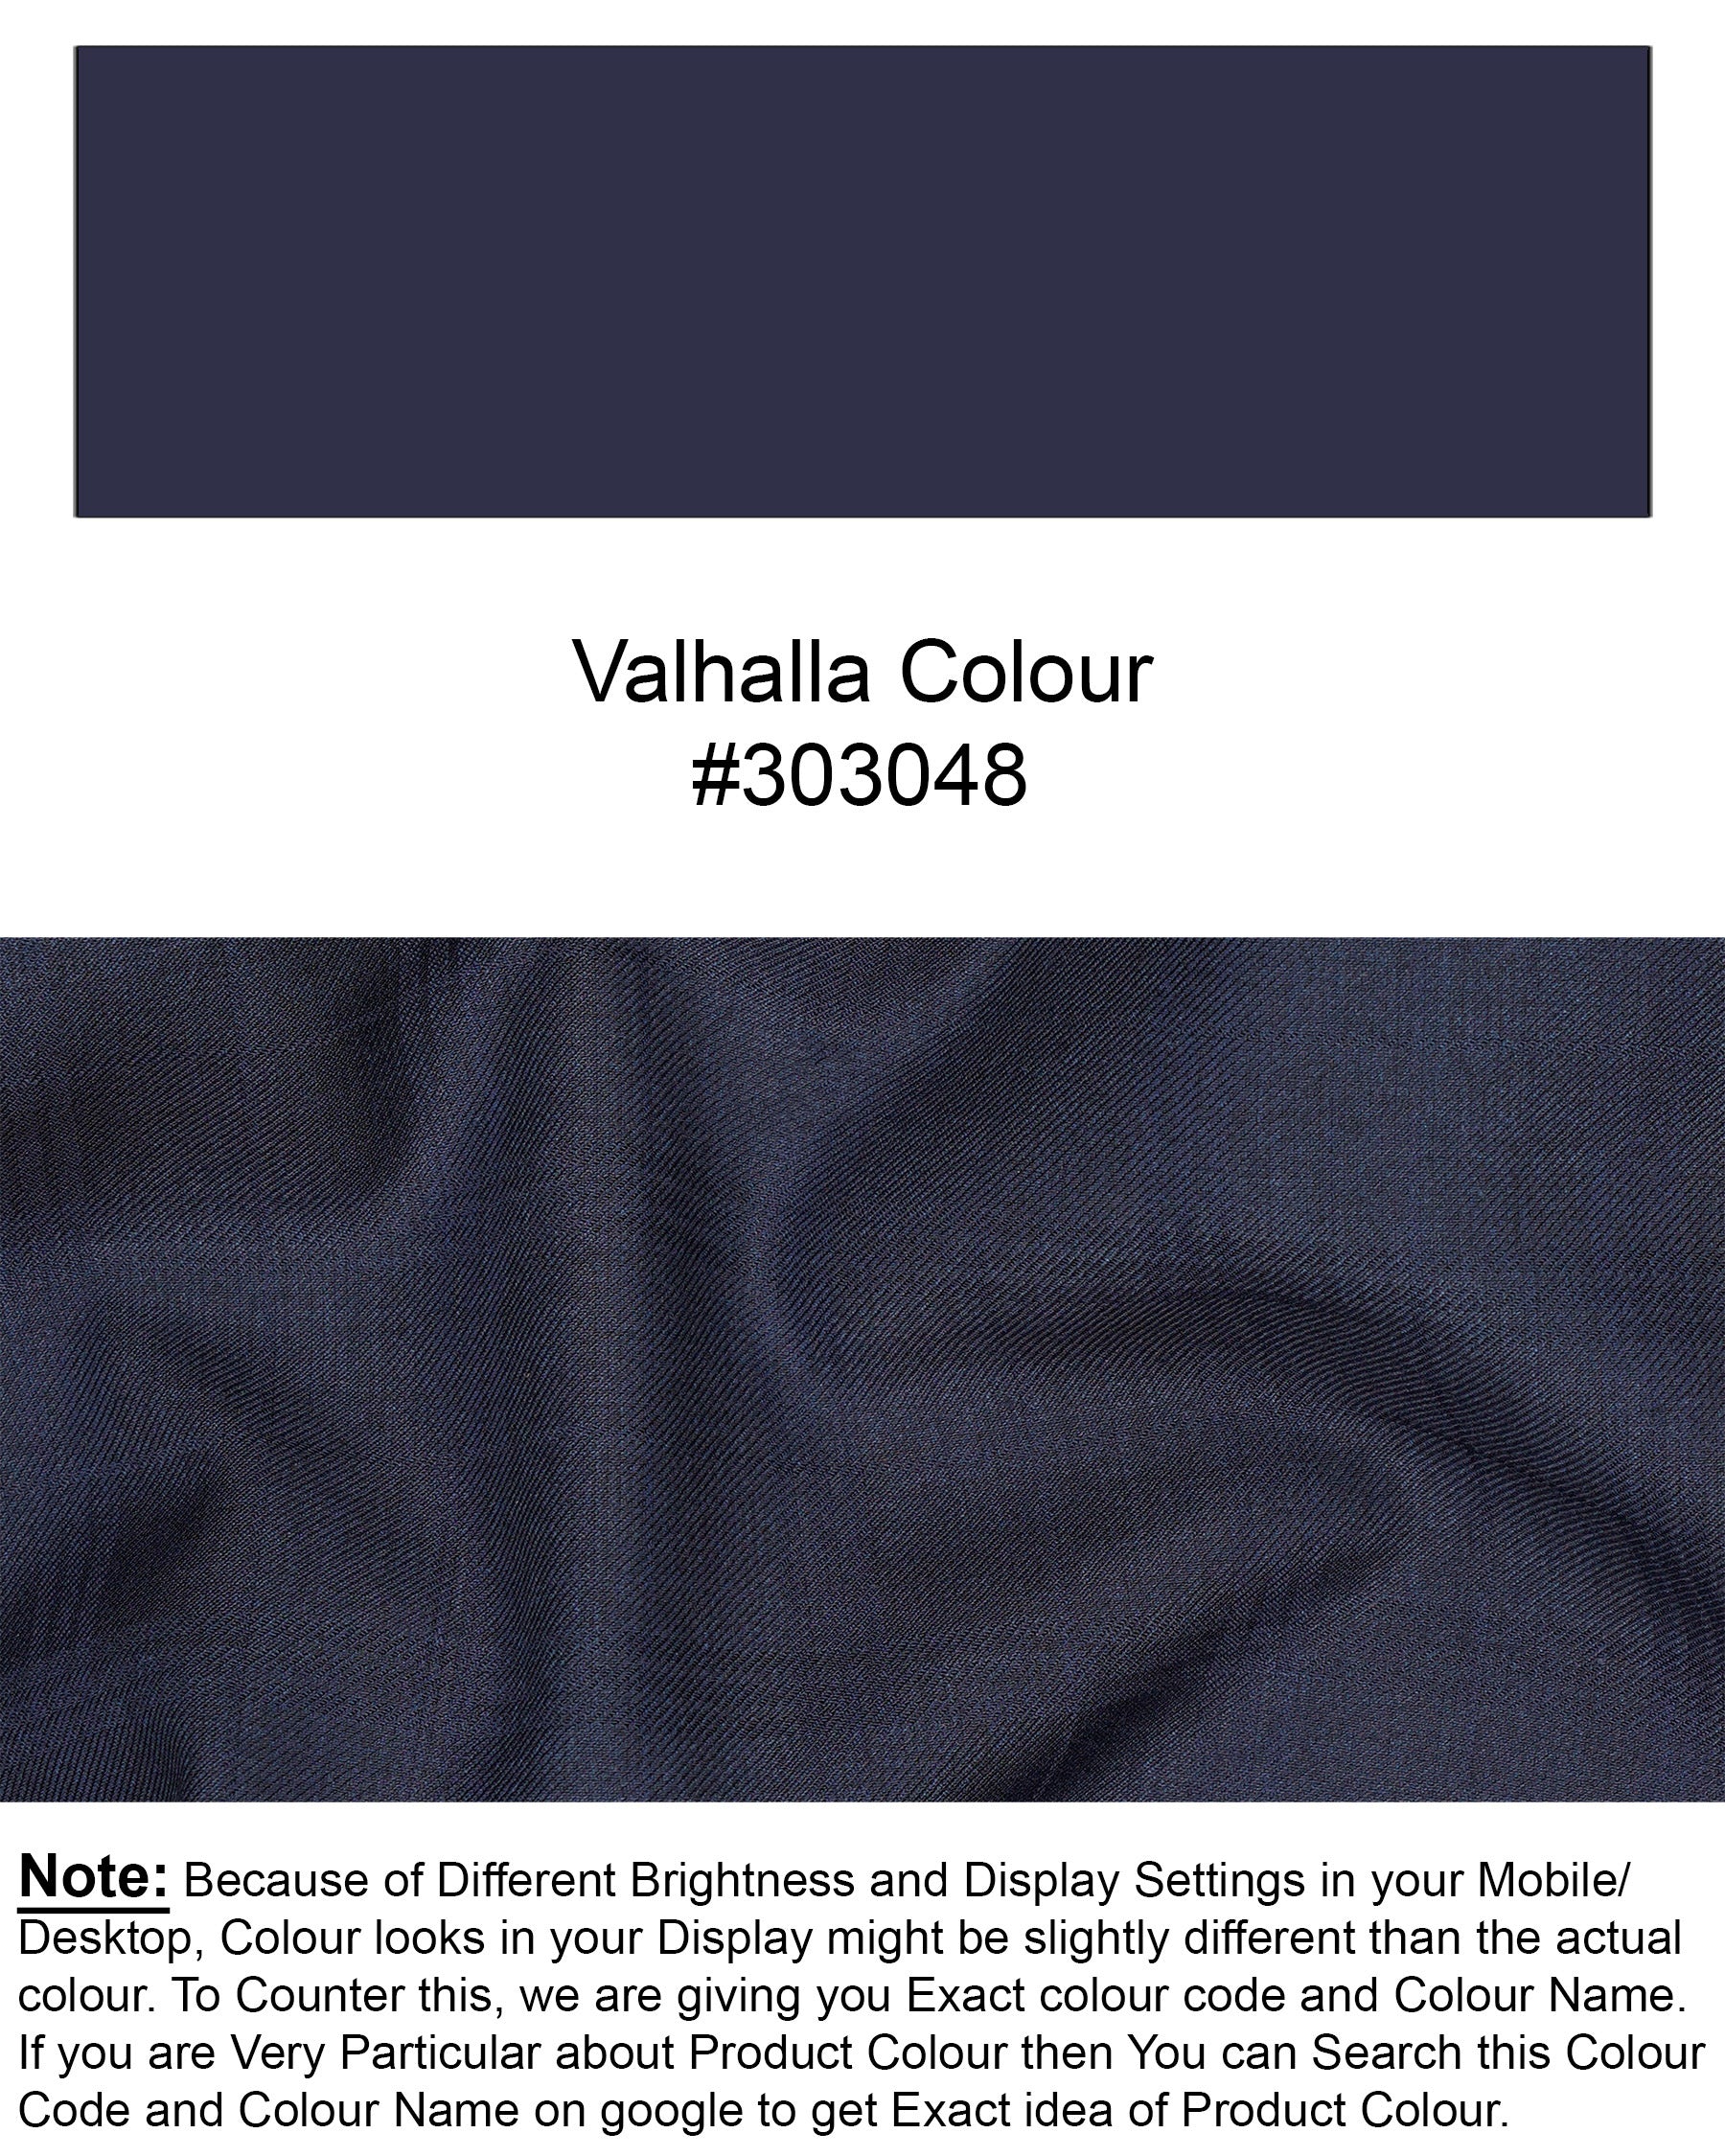 Valhalla Blue Plaid Pant T1885-28, T1885-30, T1885-32, T1885-34, T1885-36, T1885-38, T1885-40, T1885-42, T1885-44